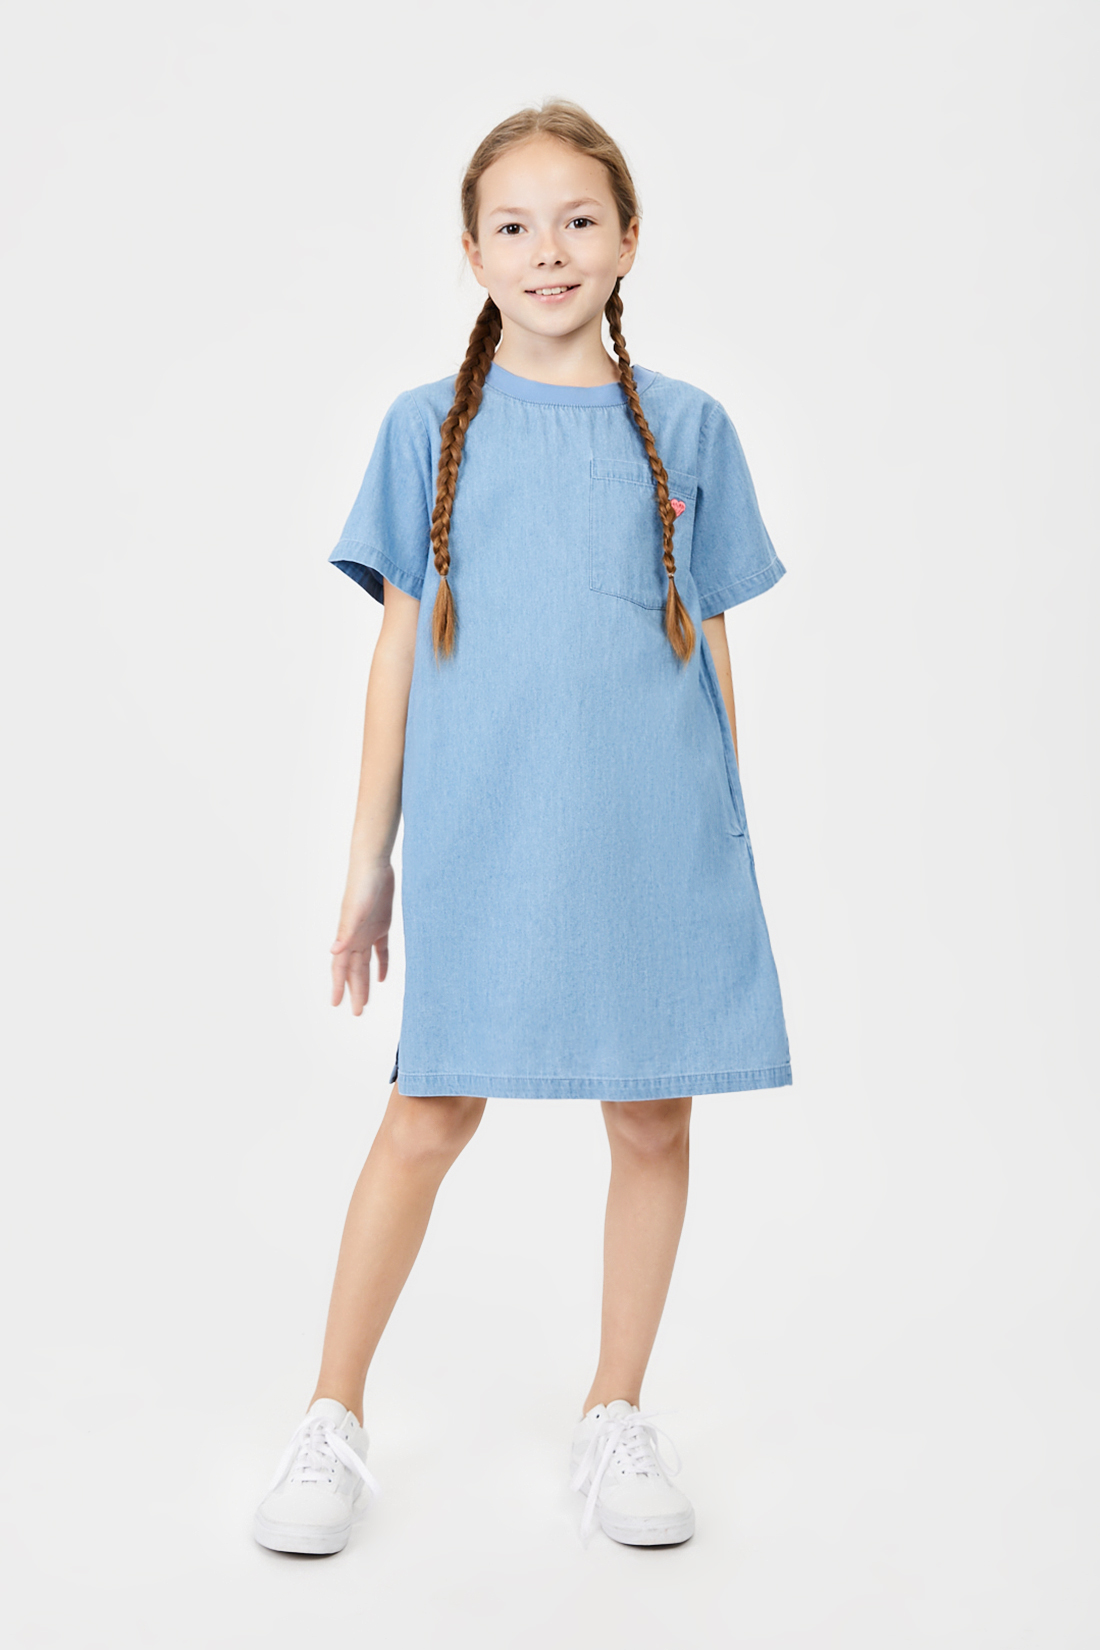 Платье (арт. baon BK451002), размер 146, цвет blue denim#голубой